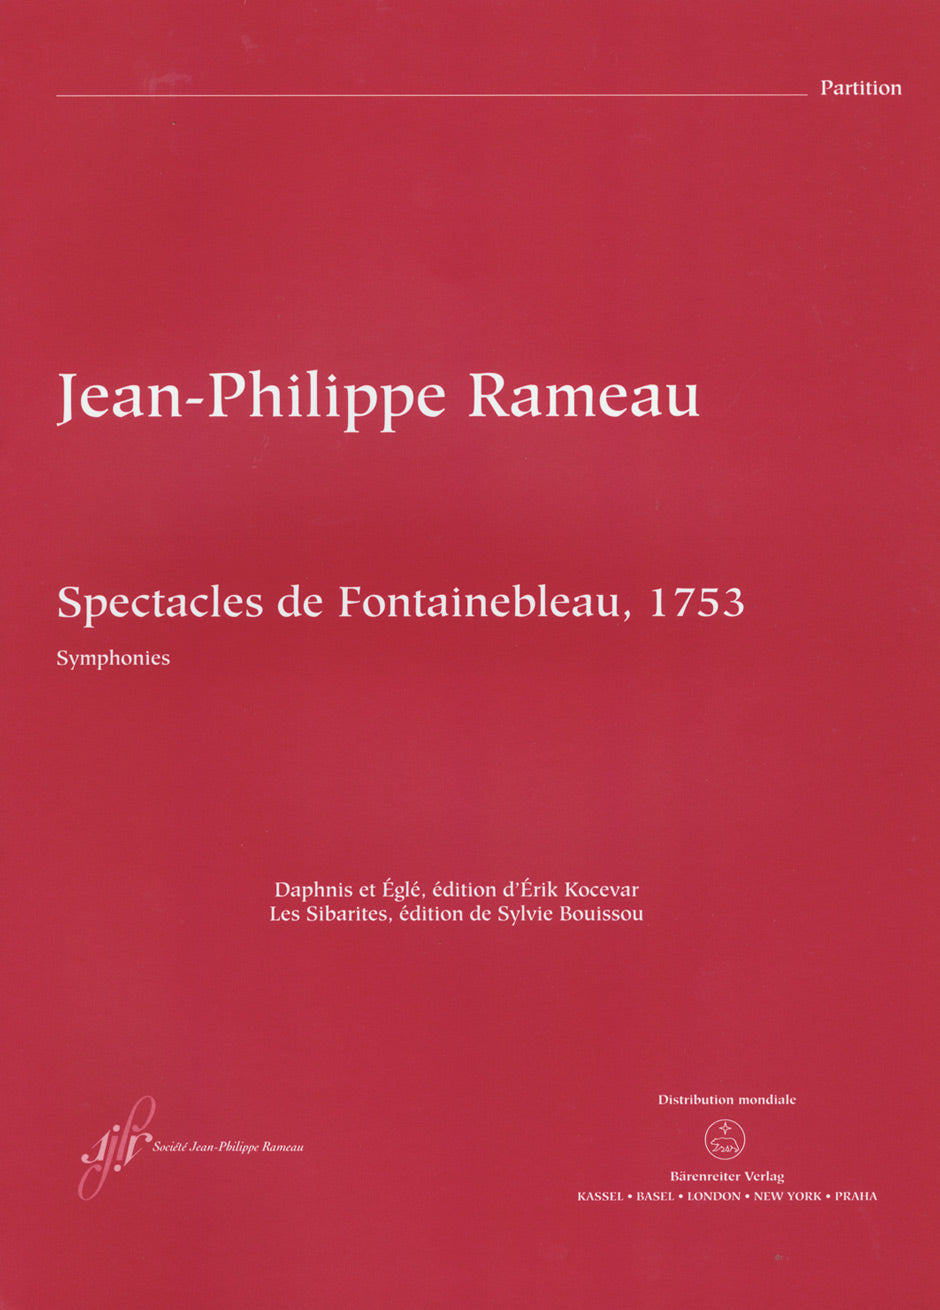 Rameau Spectacles de Fontainebleau (1753)